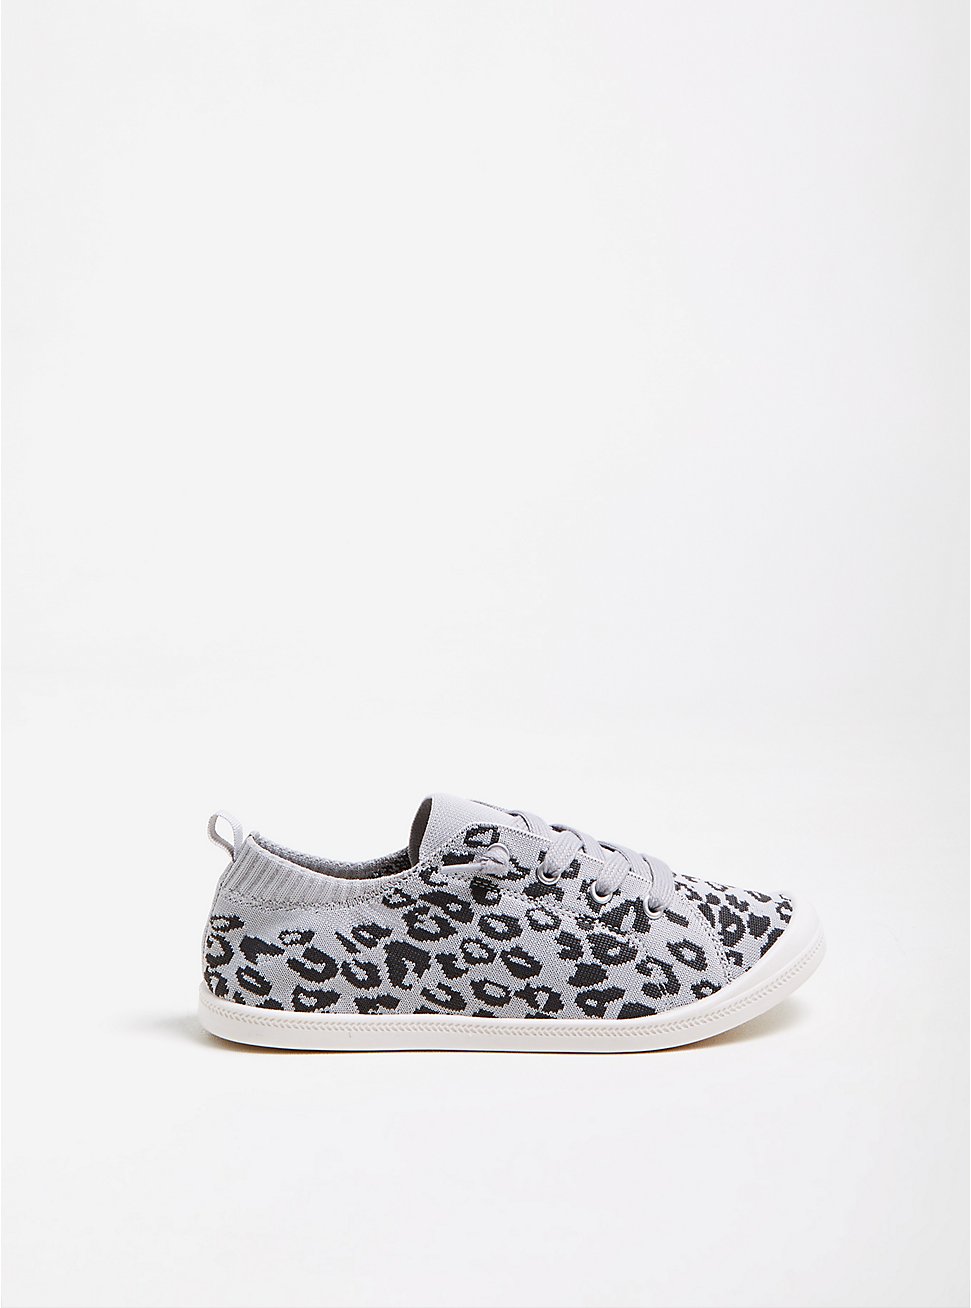 Riley Sneaker - Stretch Knit Leopard Grey Ruched (WW), GREY, hi-res